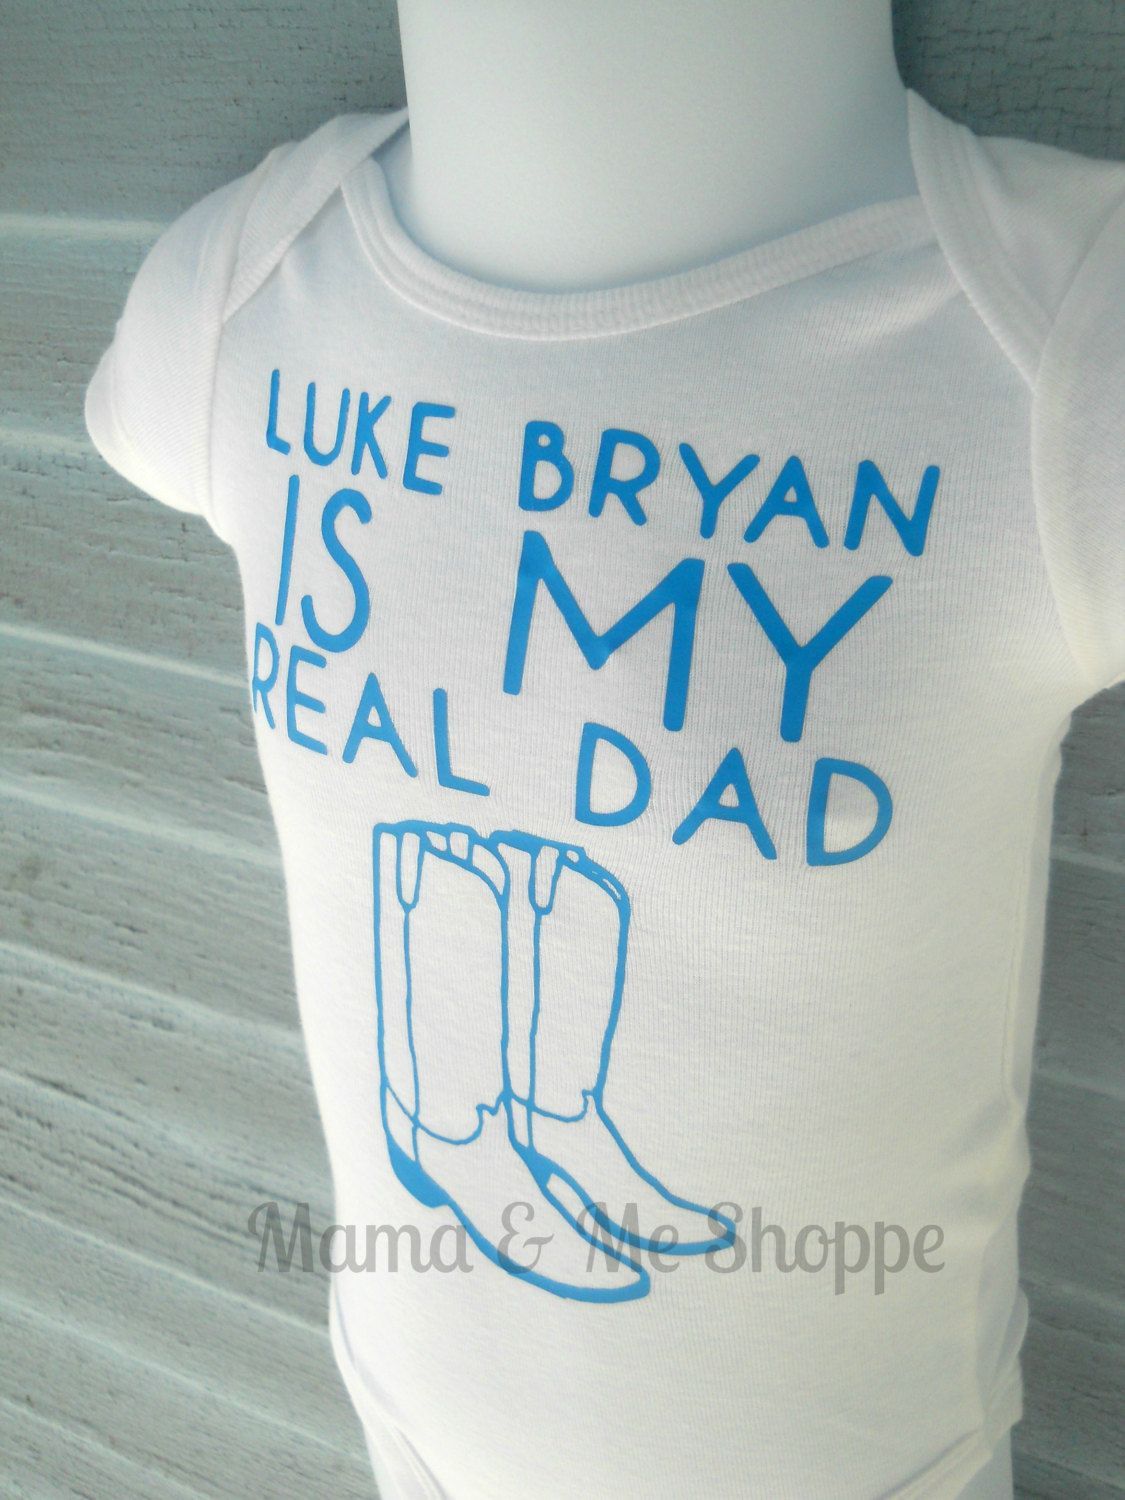 Luke Bryan is my real dad- Boys Heat Transfer vinyl onesie or shirt. $15.00, via